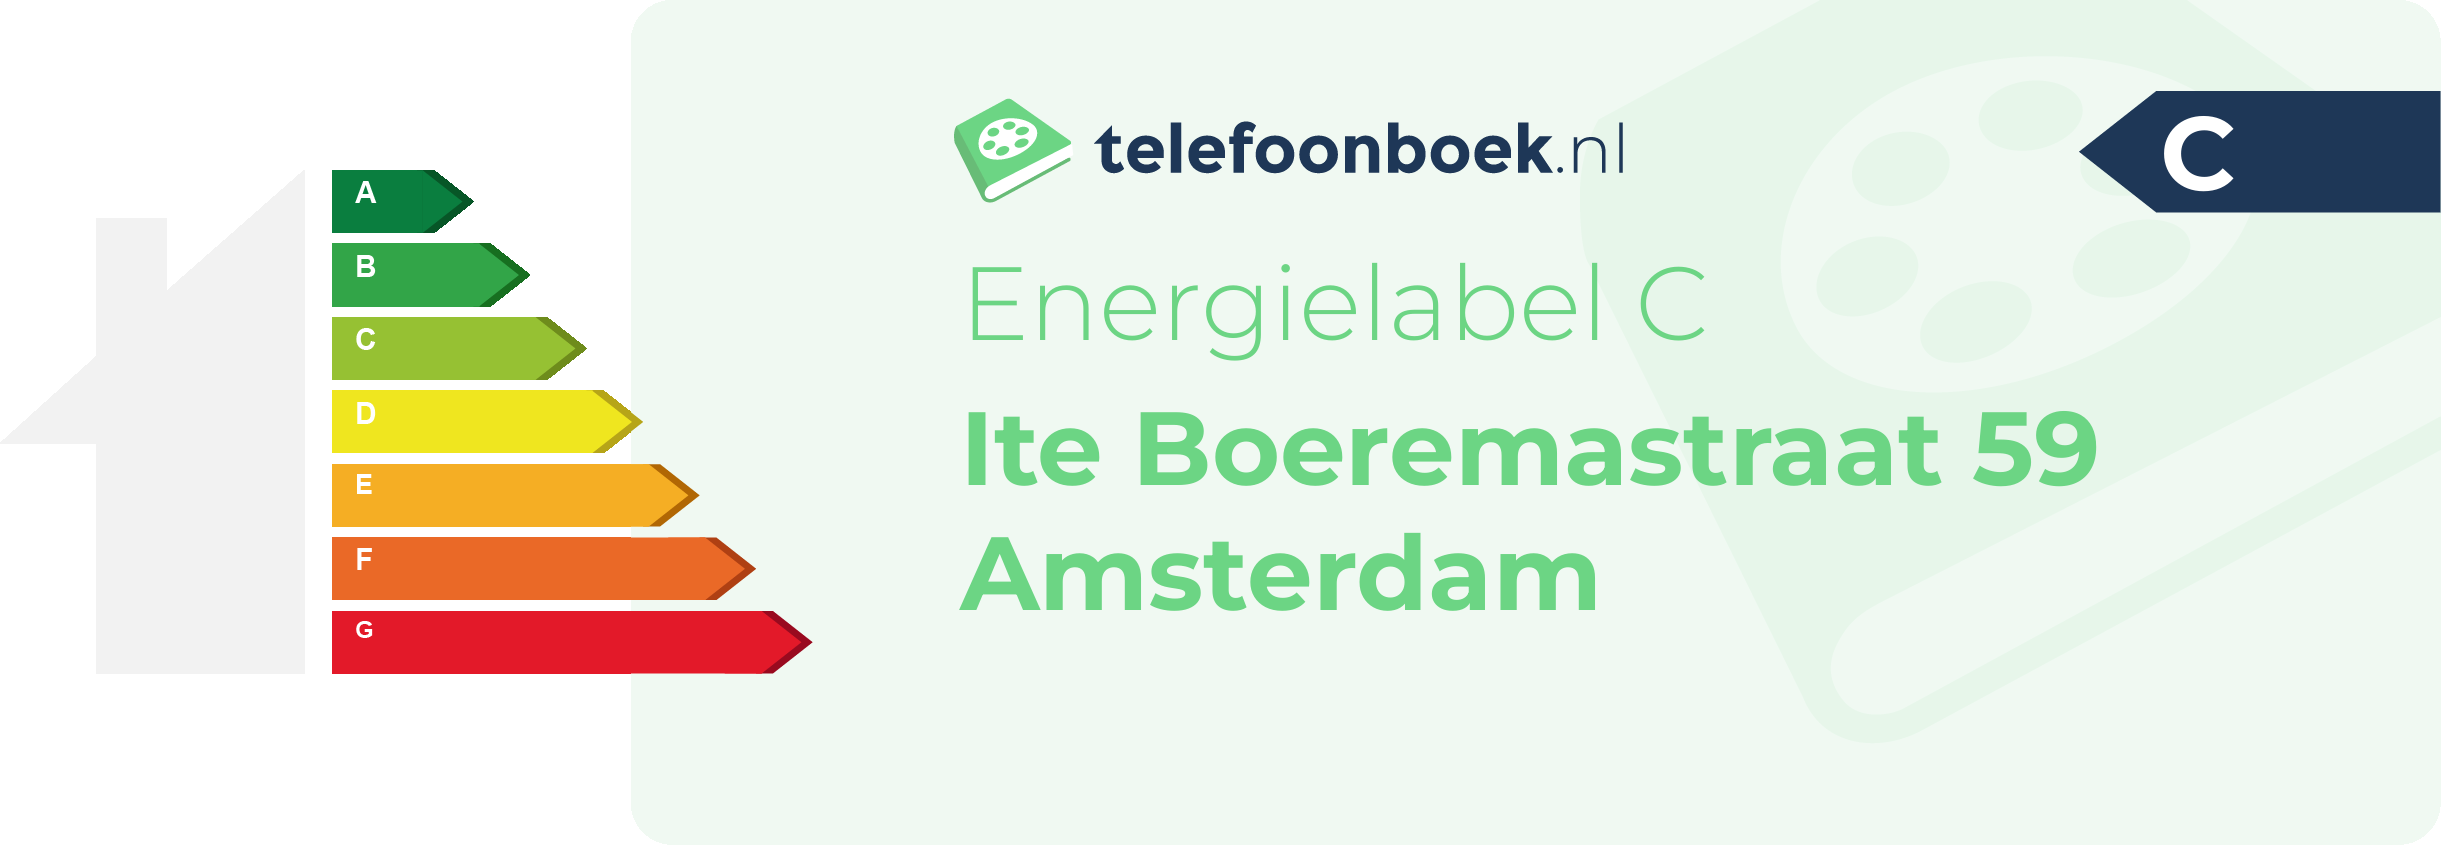 Energielabel Ite Boeremastraat 59 Amsterdam